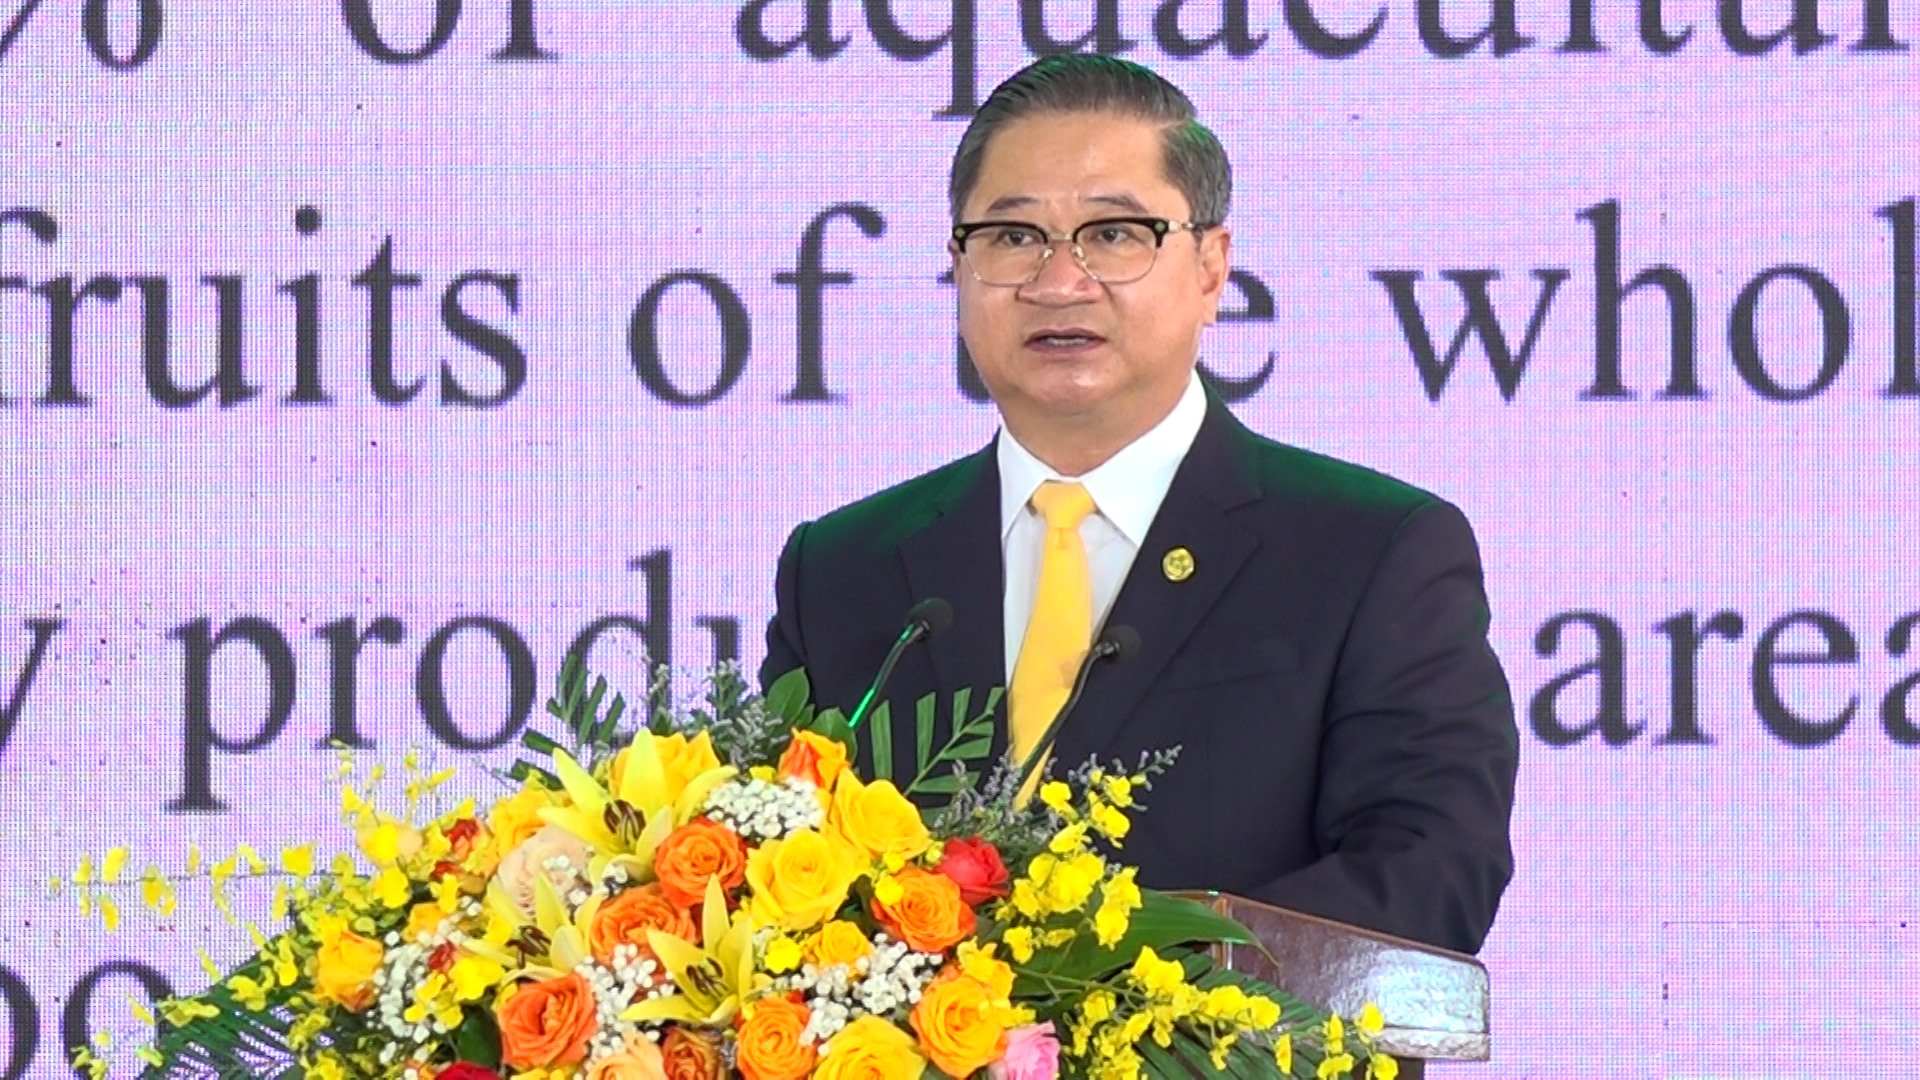 Ông Trần Việt Trường – Chủ tịch UBND TP. Cần Thơ phát biểu khai mạc tại buổi lễ.